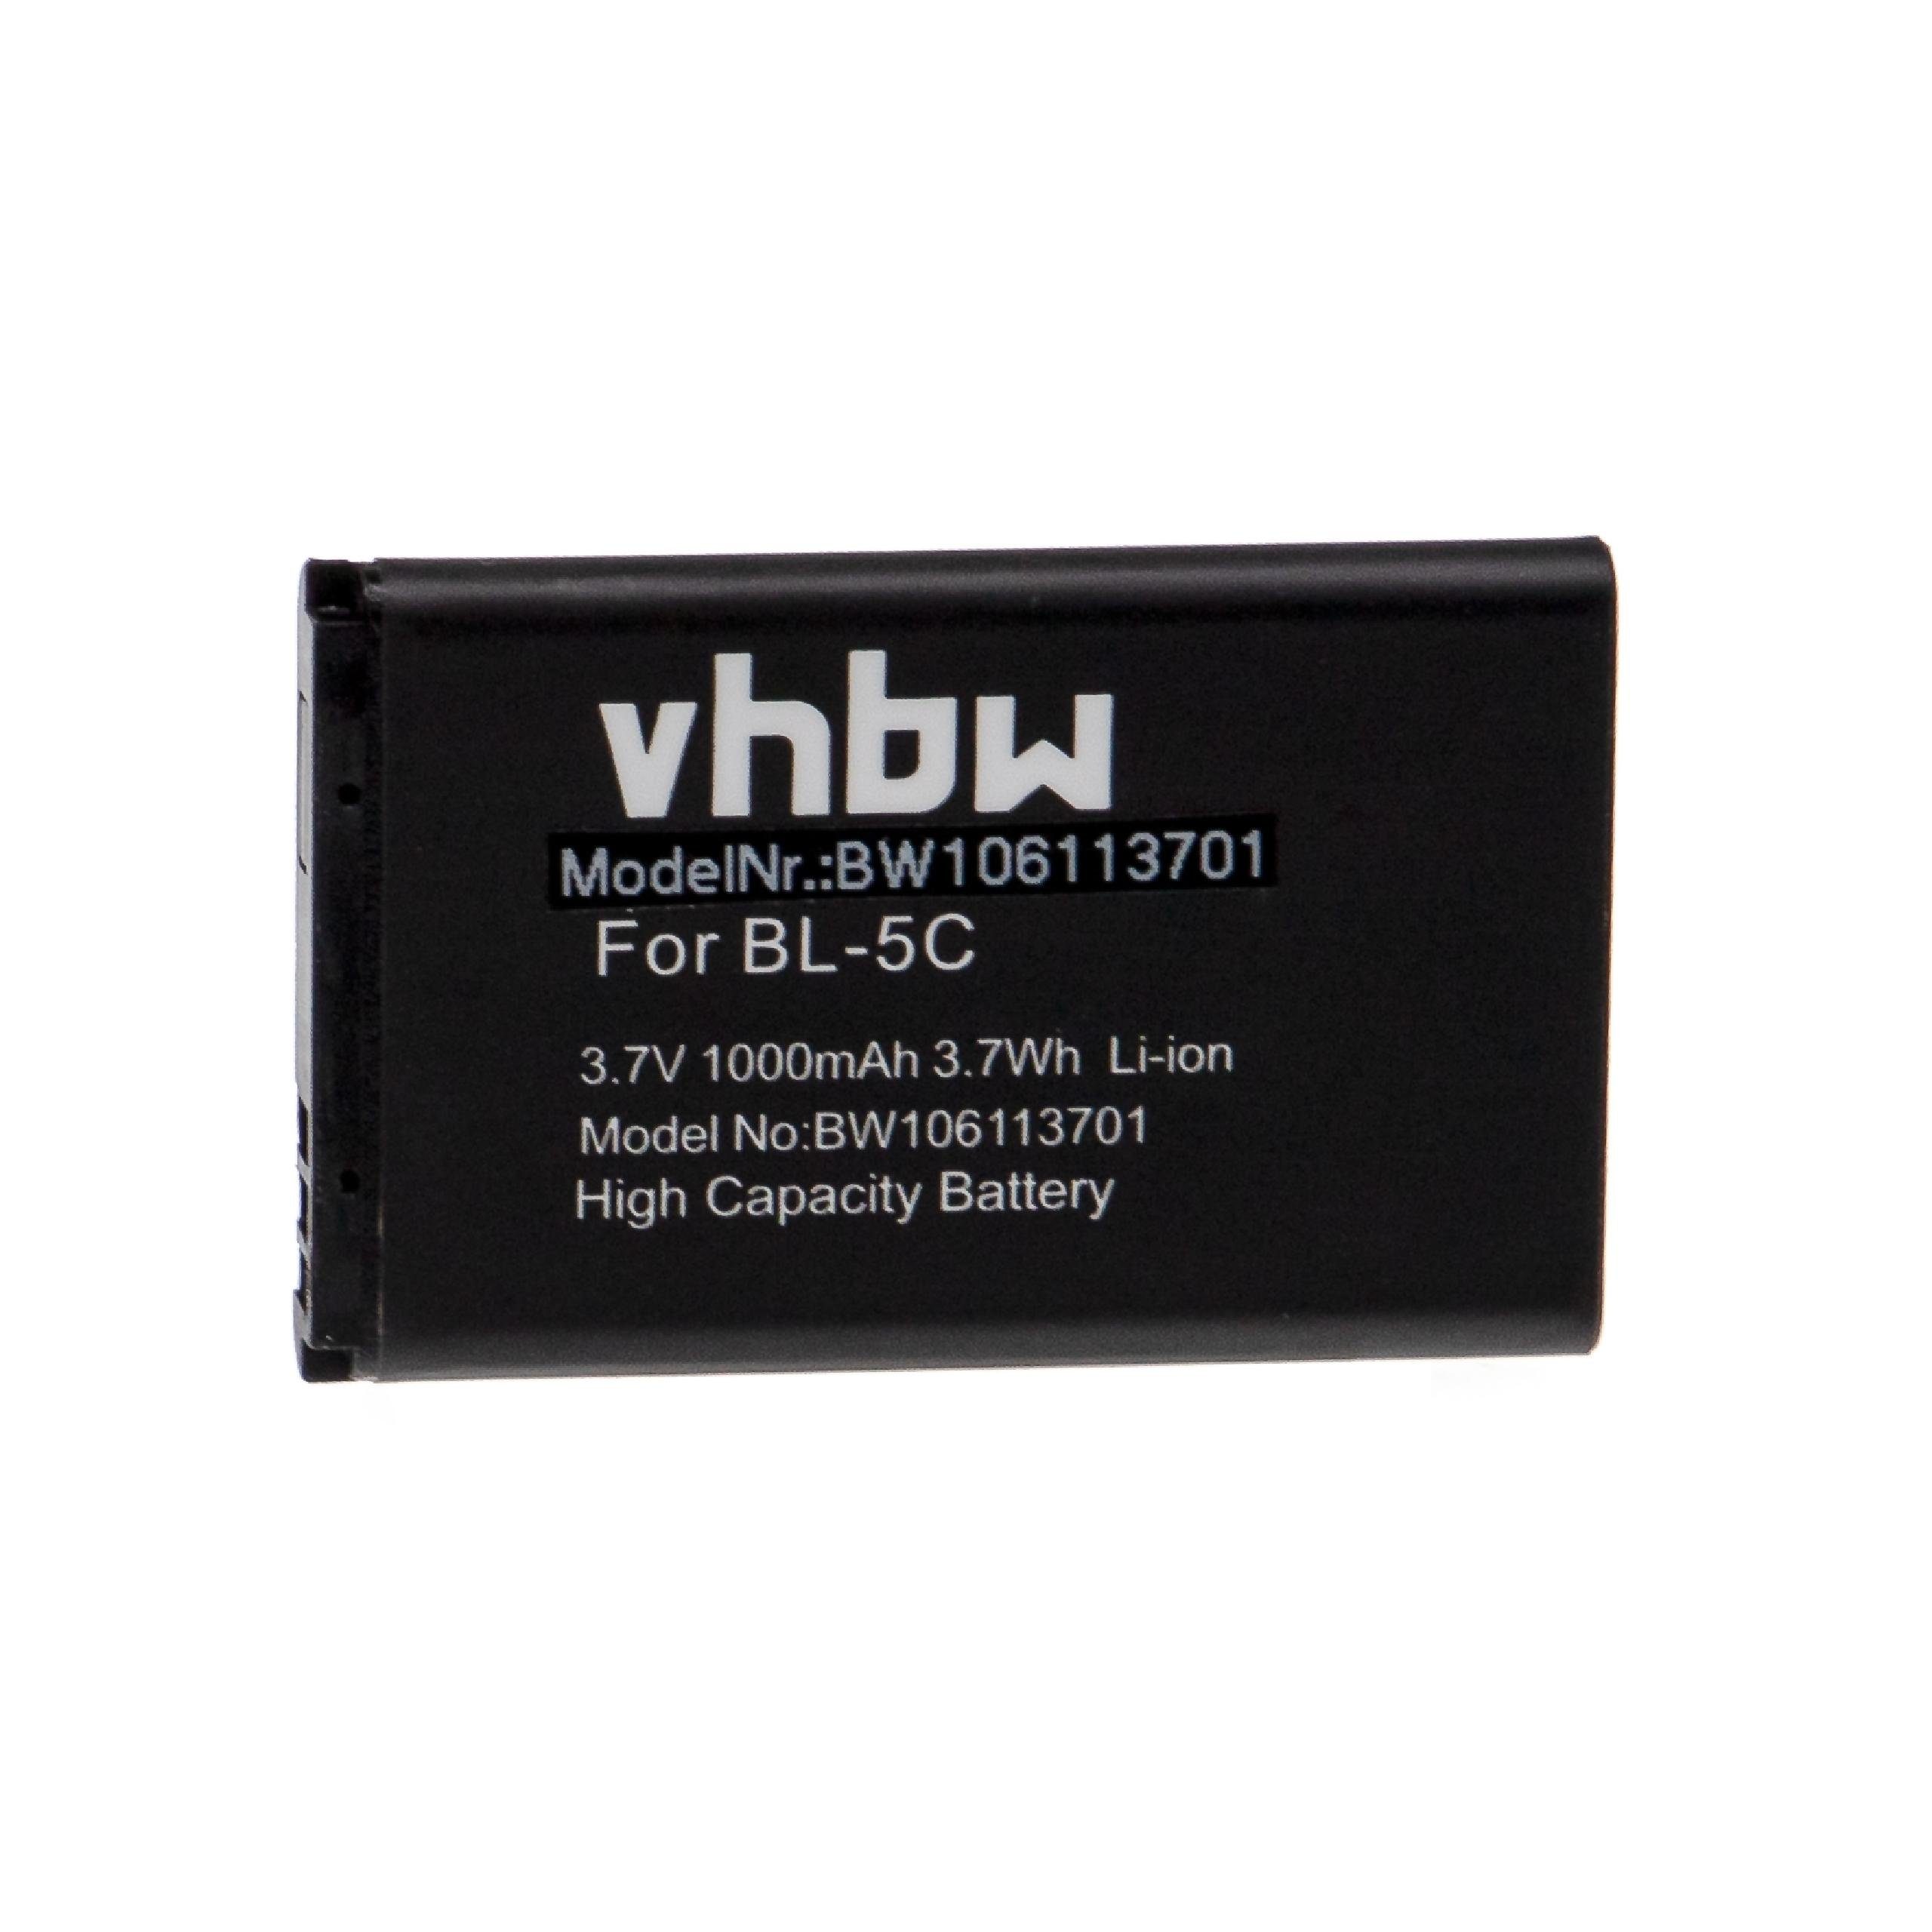 vhbw kompatibel mit Spice C5300, M6464, QT-52, S3636 Smartphone-Akku Li-Ion 1000 mAh (3,7 V)